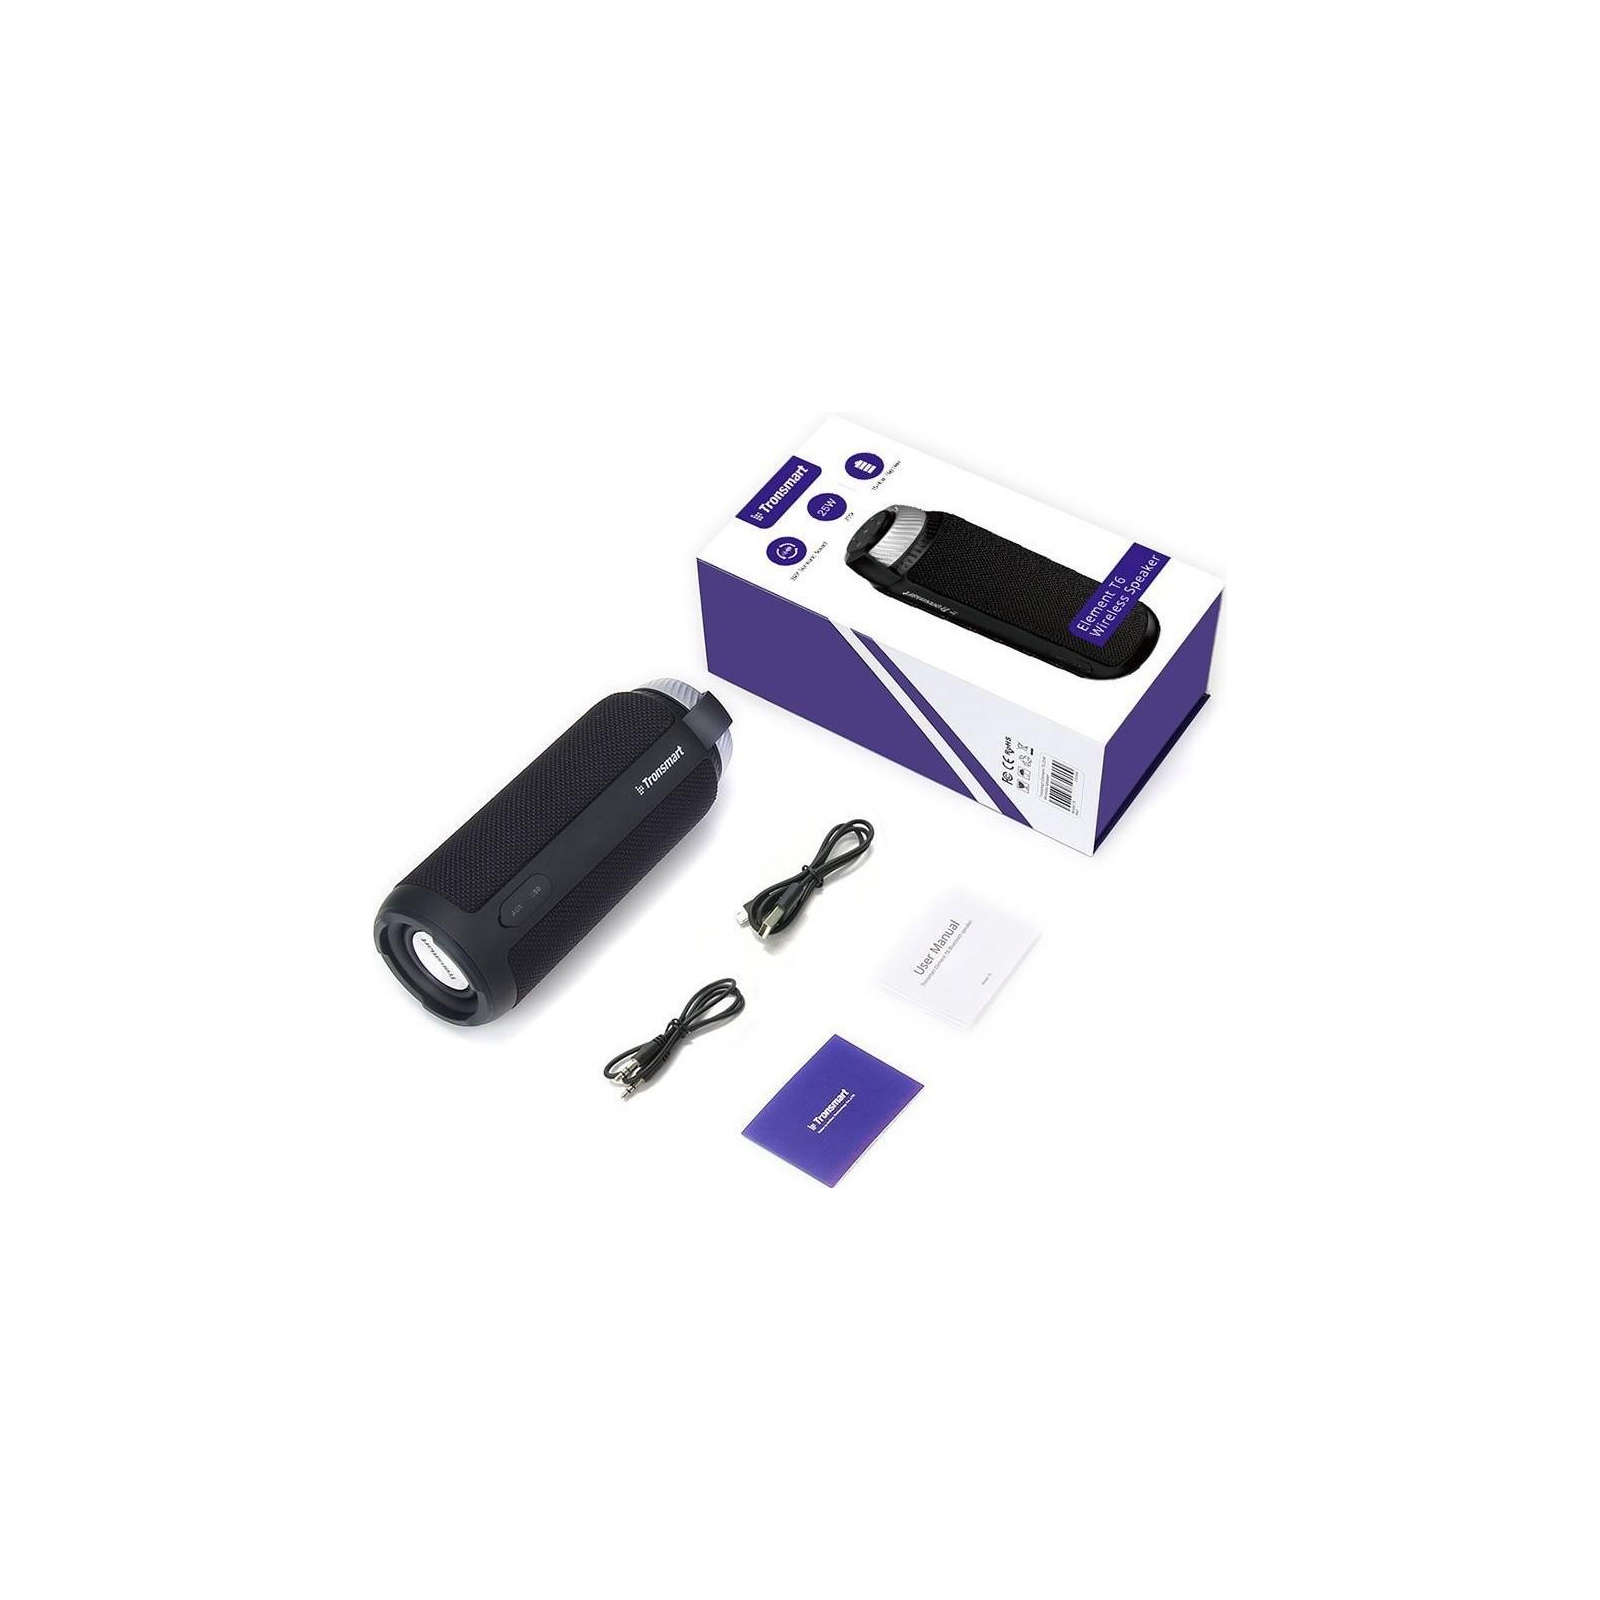 Акустическая система Tronsmart Element T6 Portable Bluetooth Speaker Black (235567) изображение 4